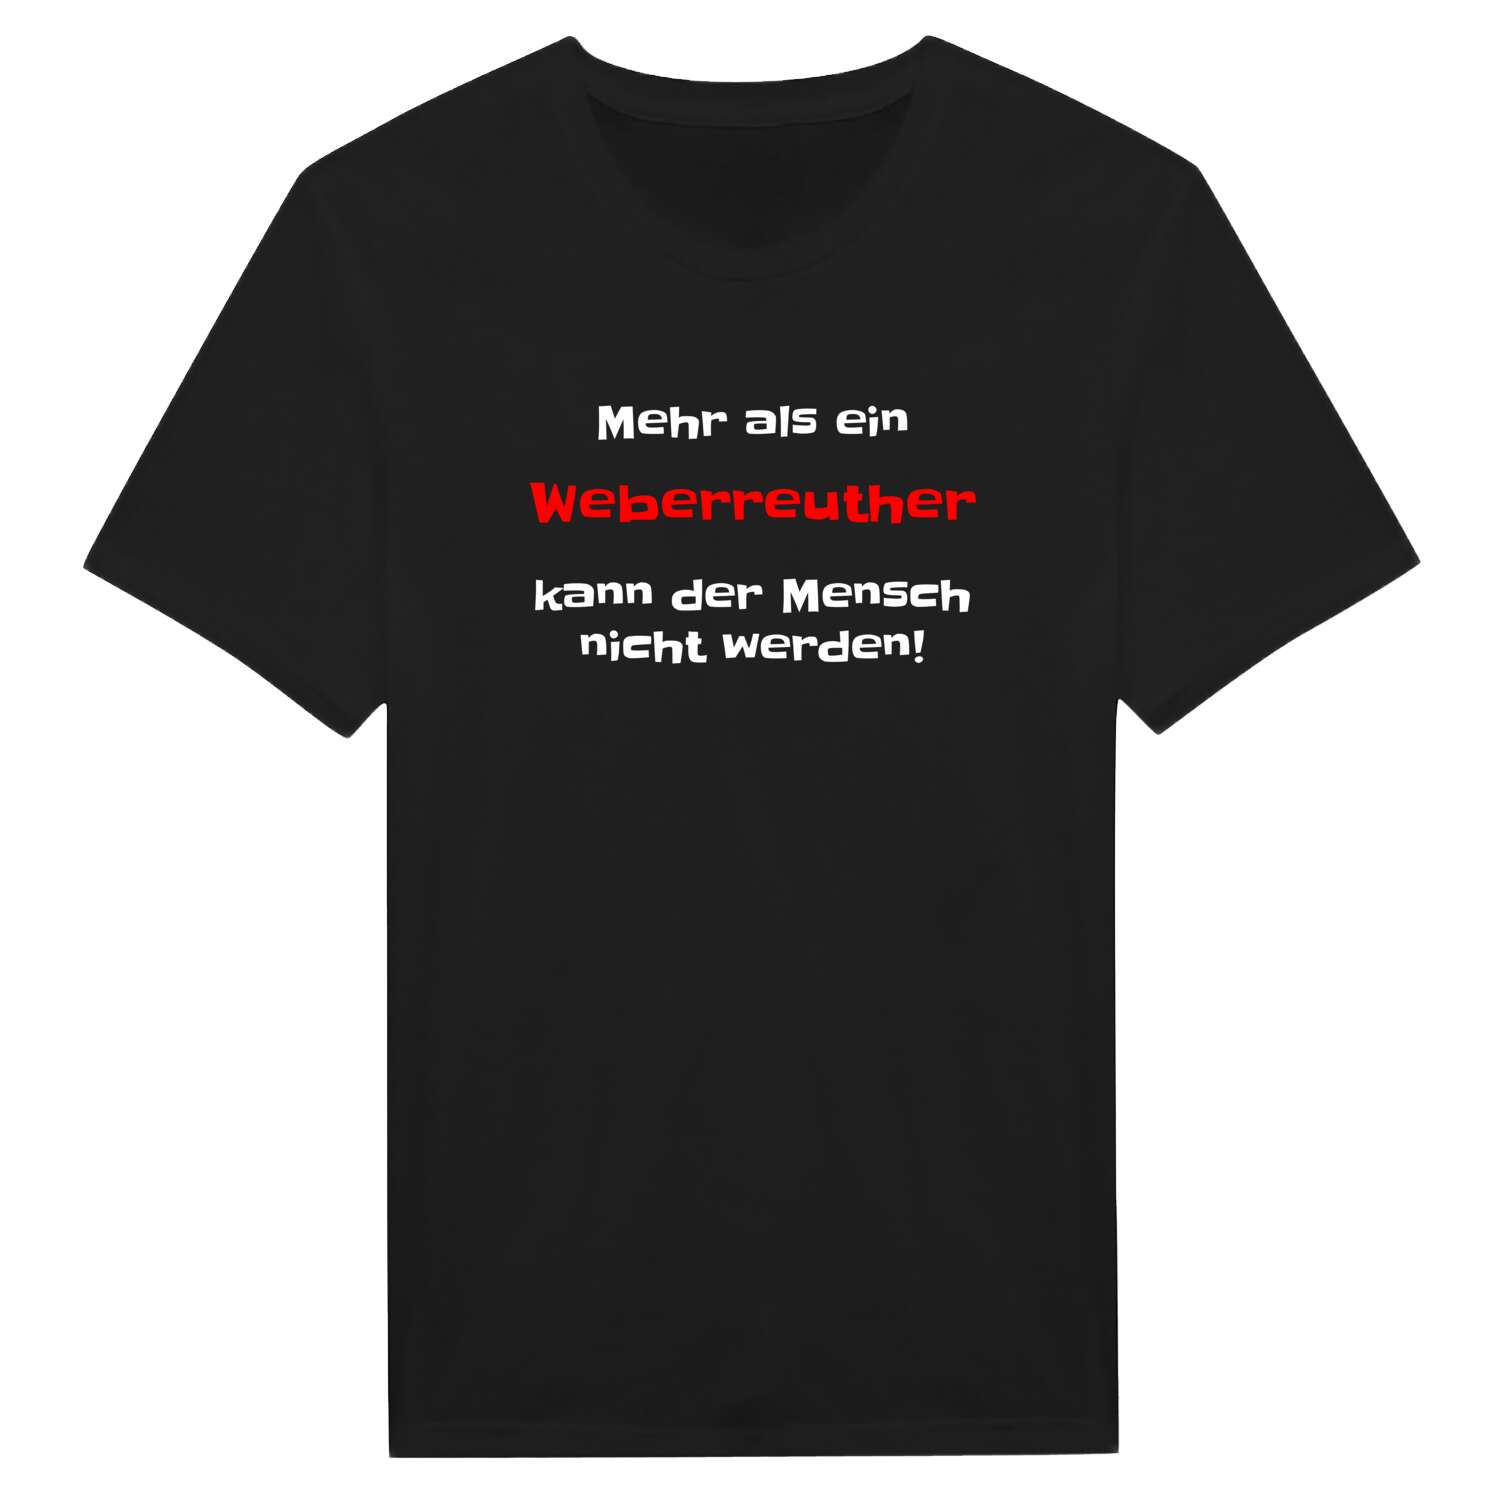 Weberreuth T-Shirt »Mehr als ein«